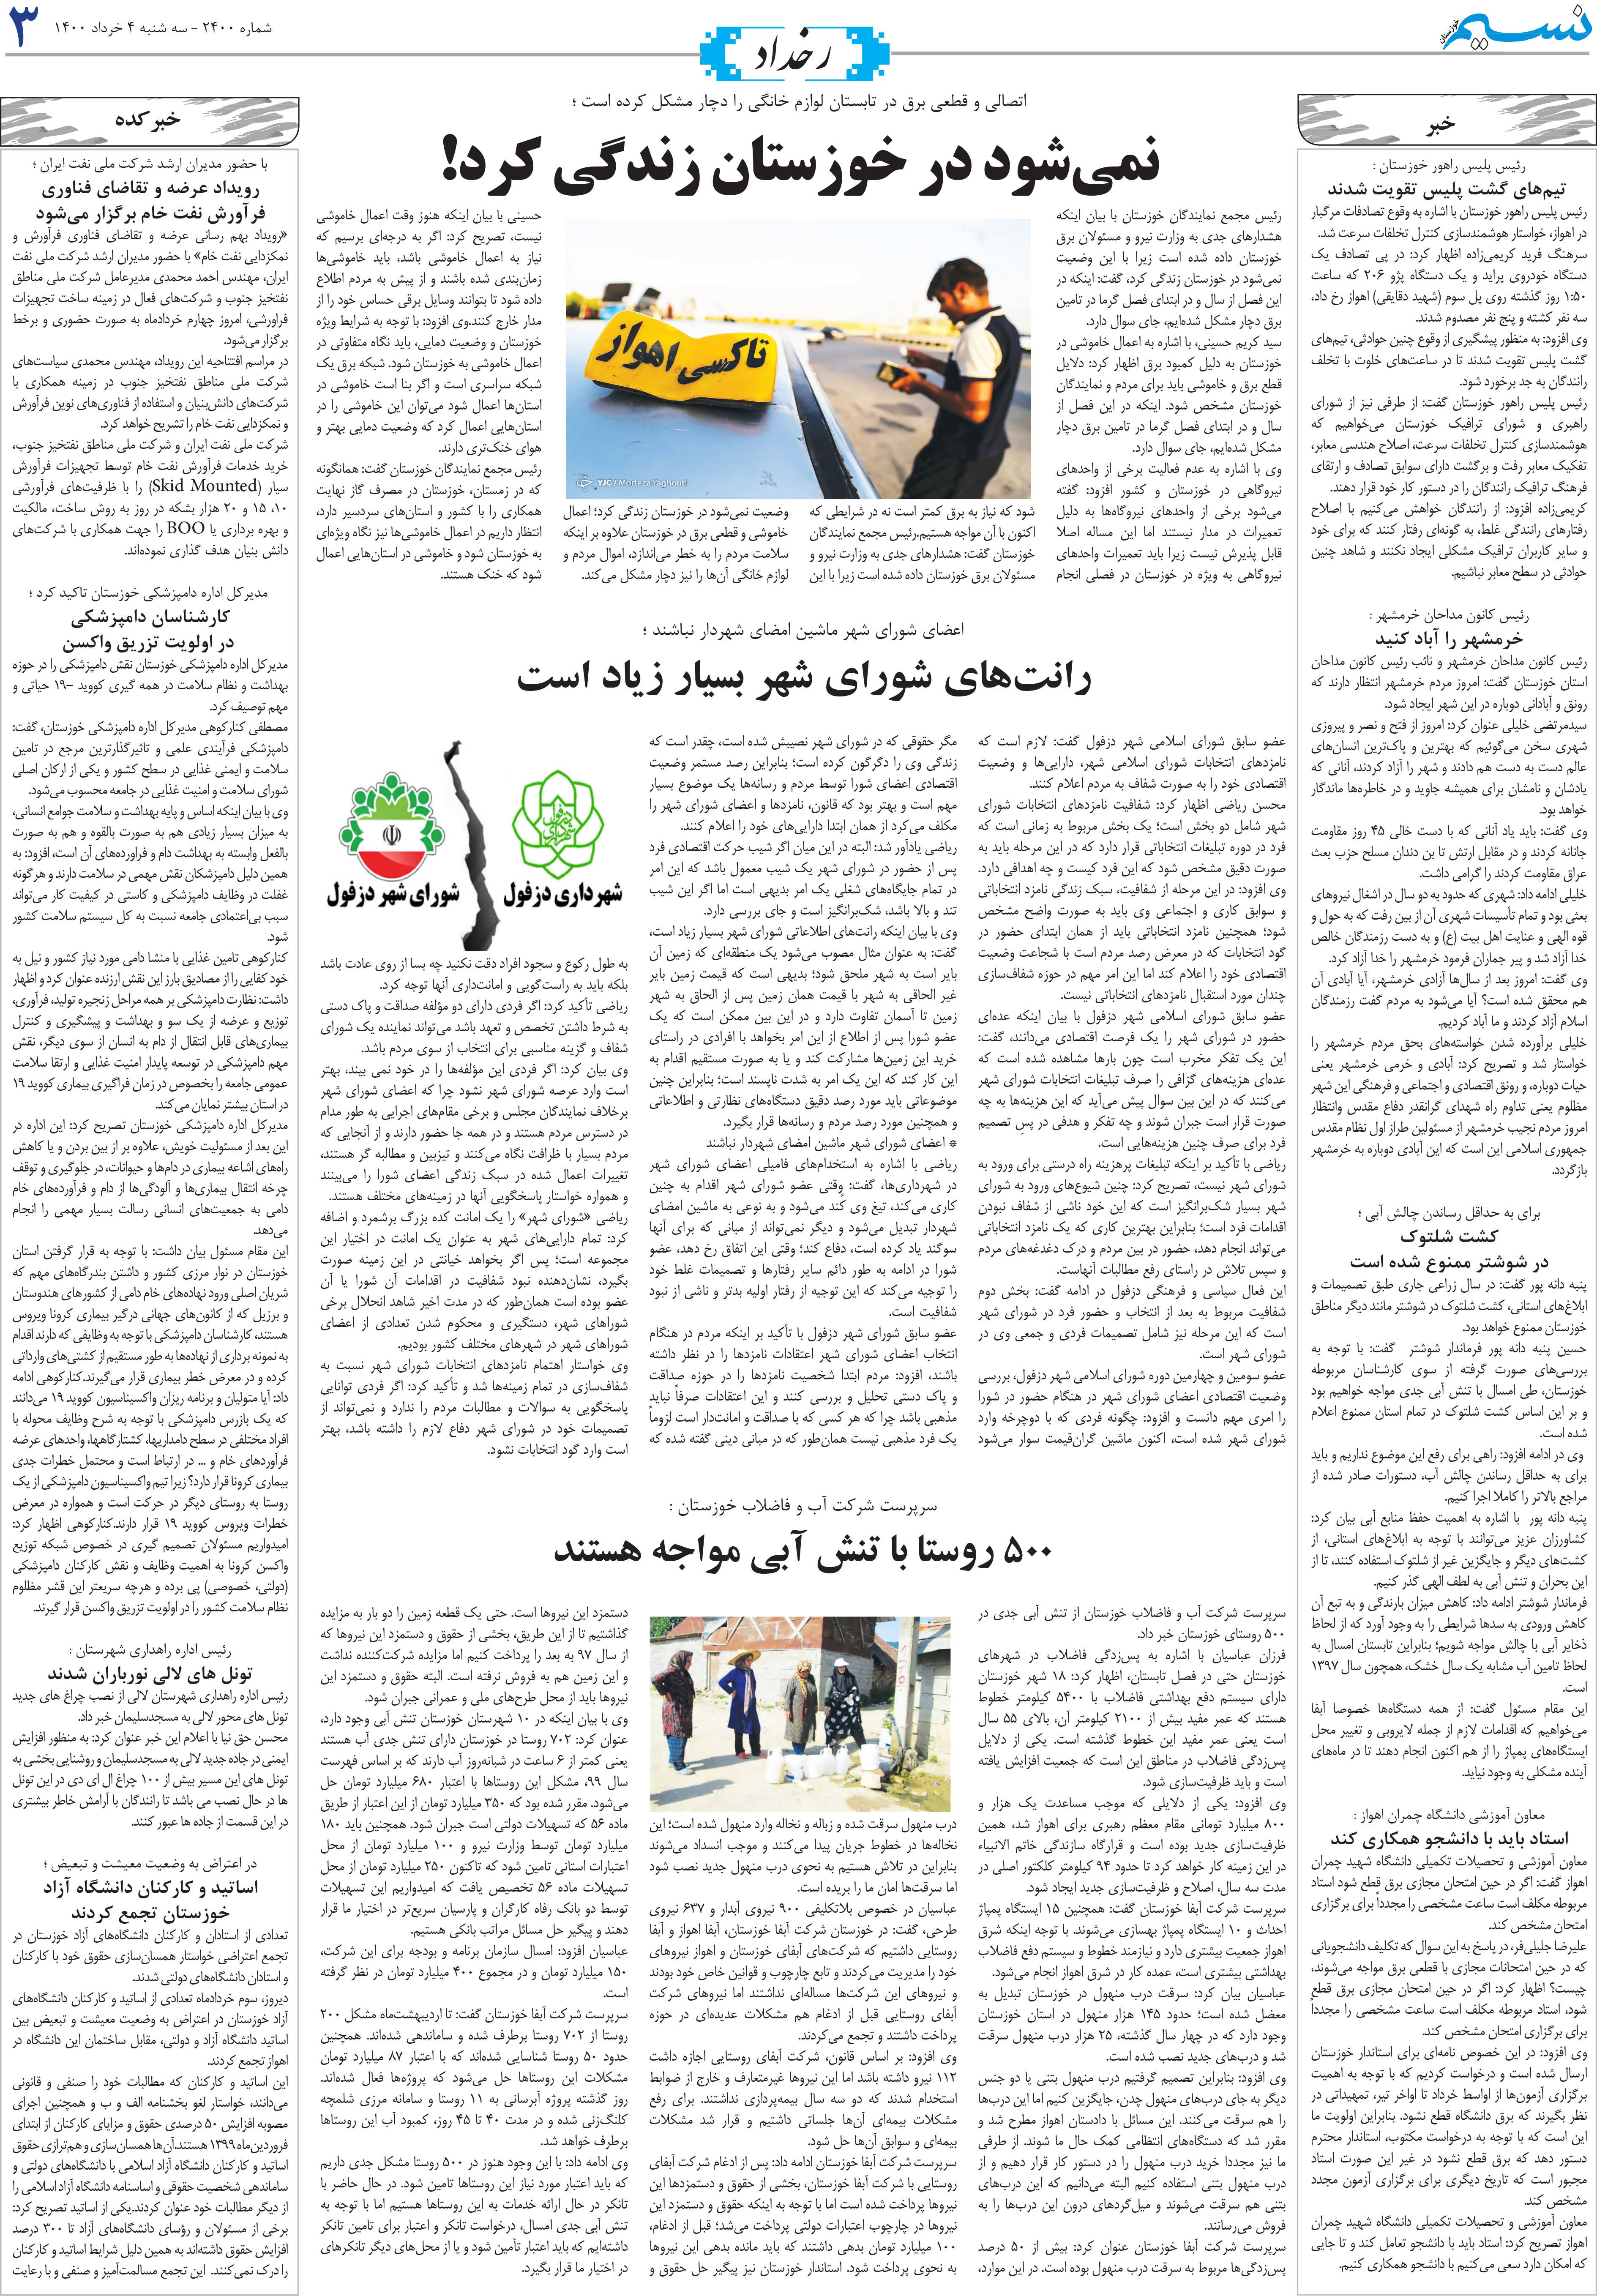 صفحه رخداد روزنامه نسیم شماره 2400